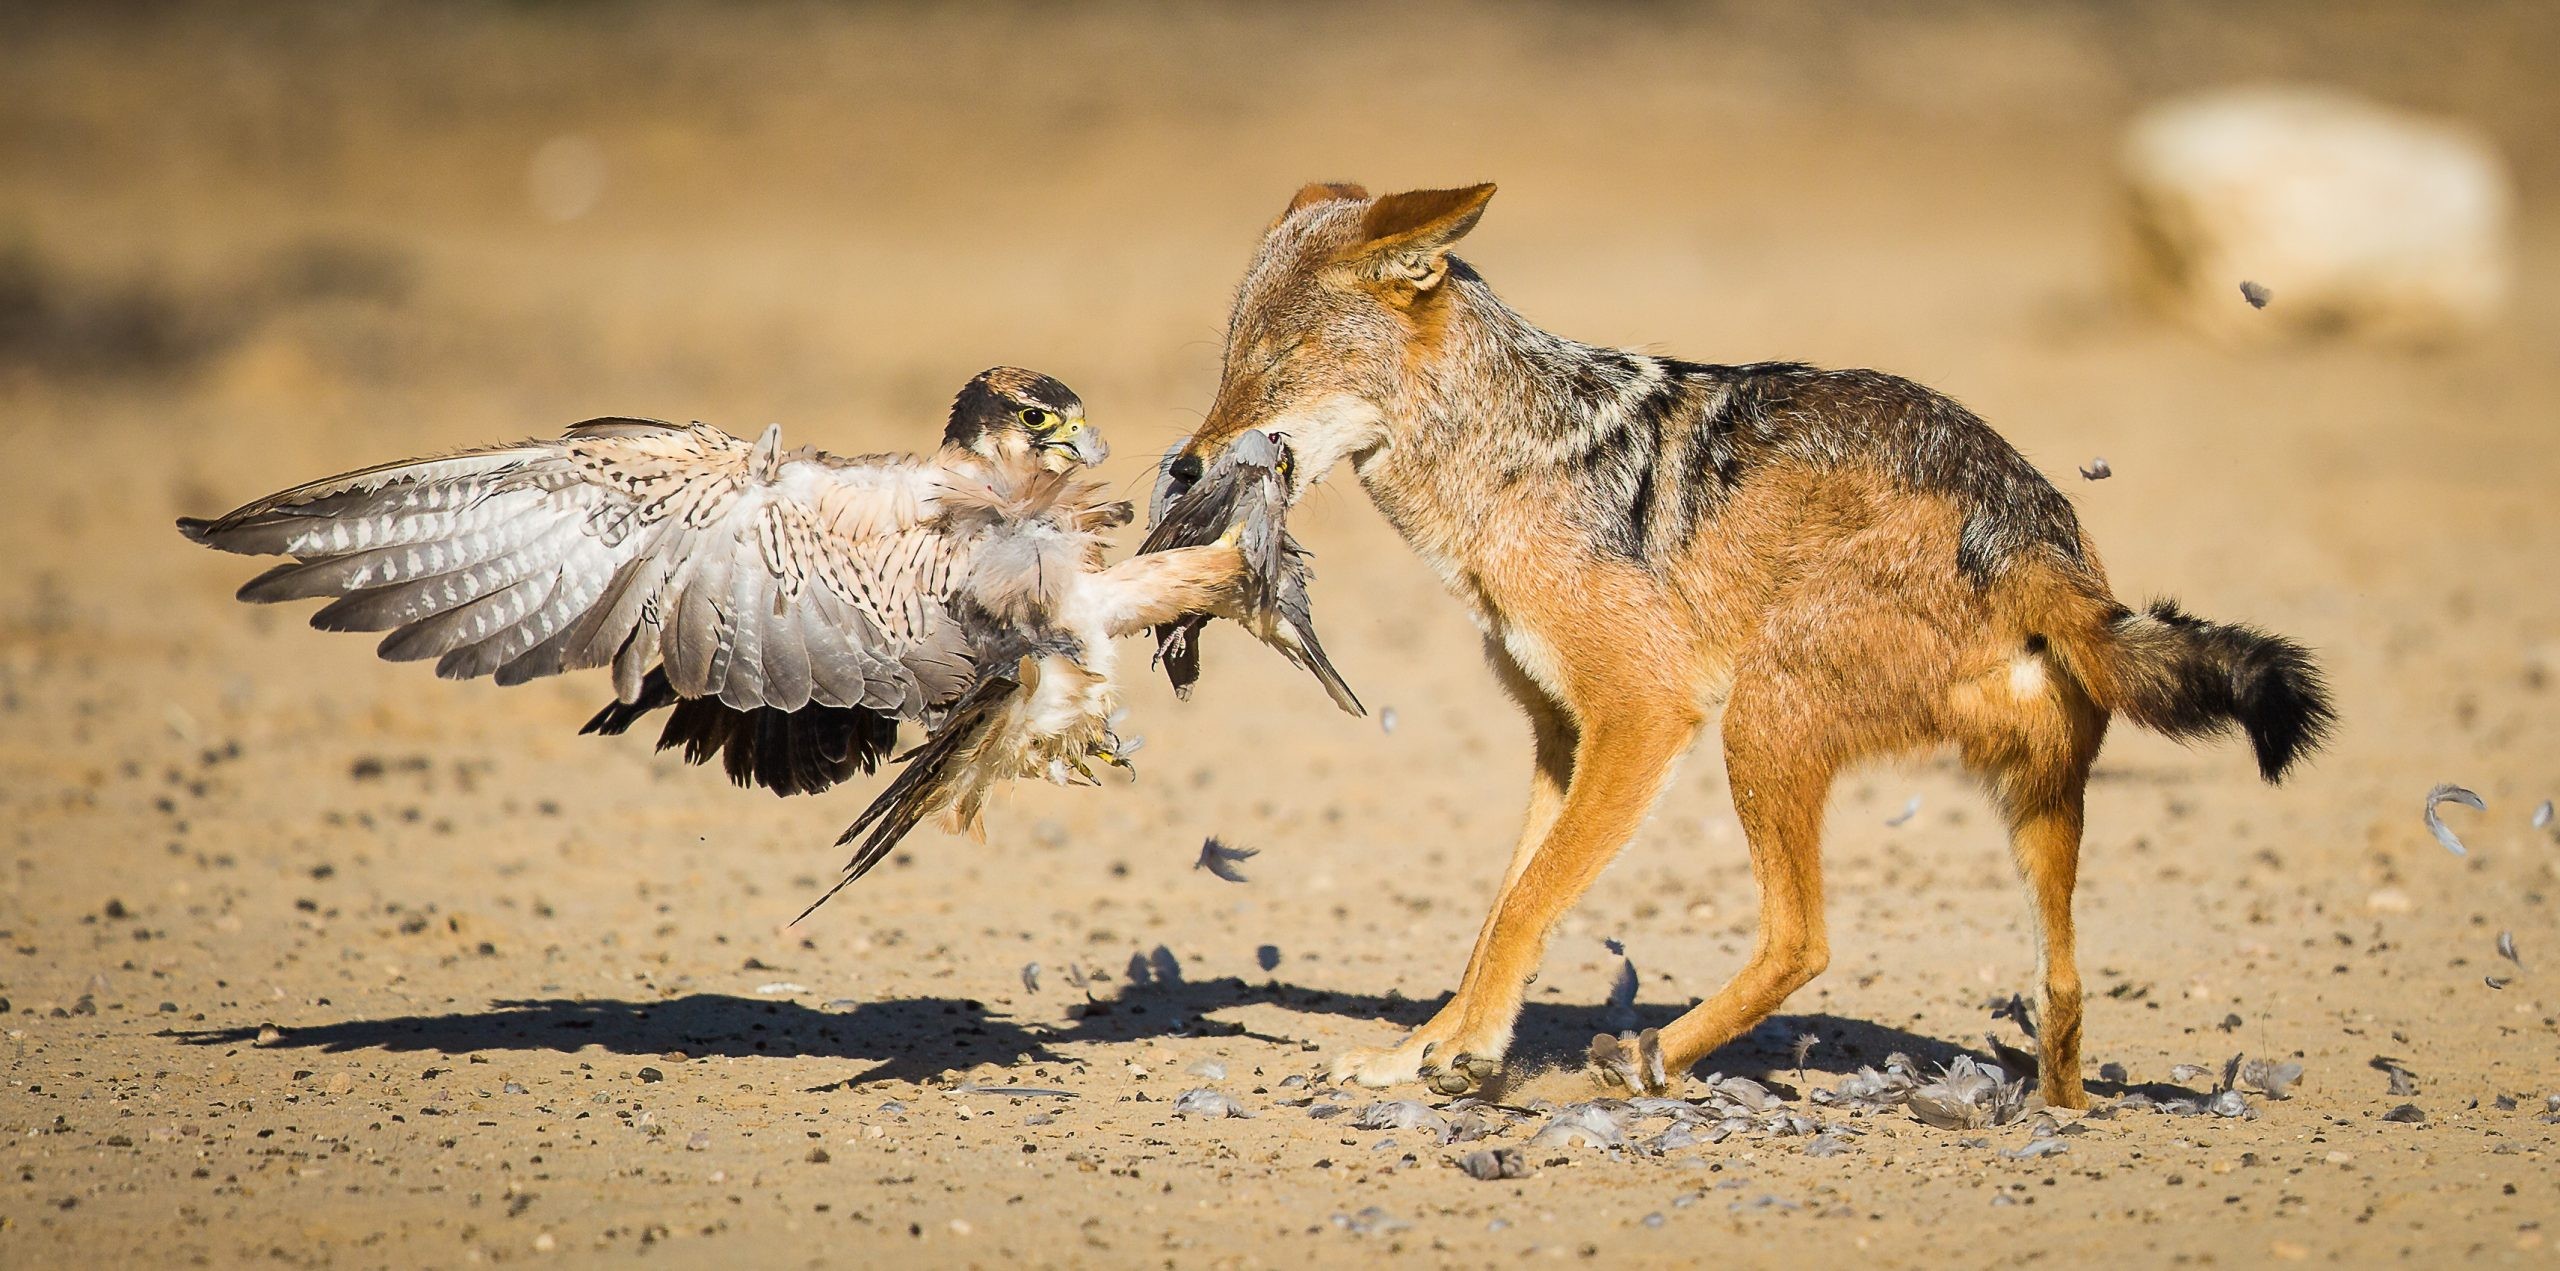 Категория Поведение птиц, 2020. Борьба за пищу. Кгалагади, Ботсвана. Фотограф Риан ван Шалквик